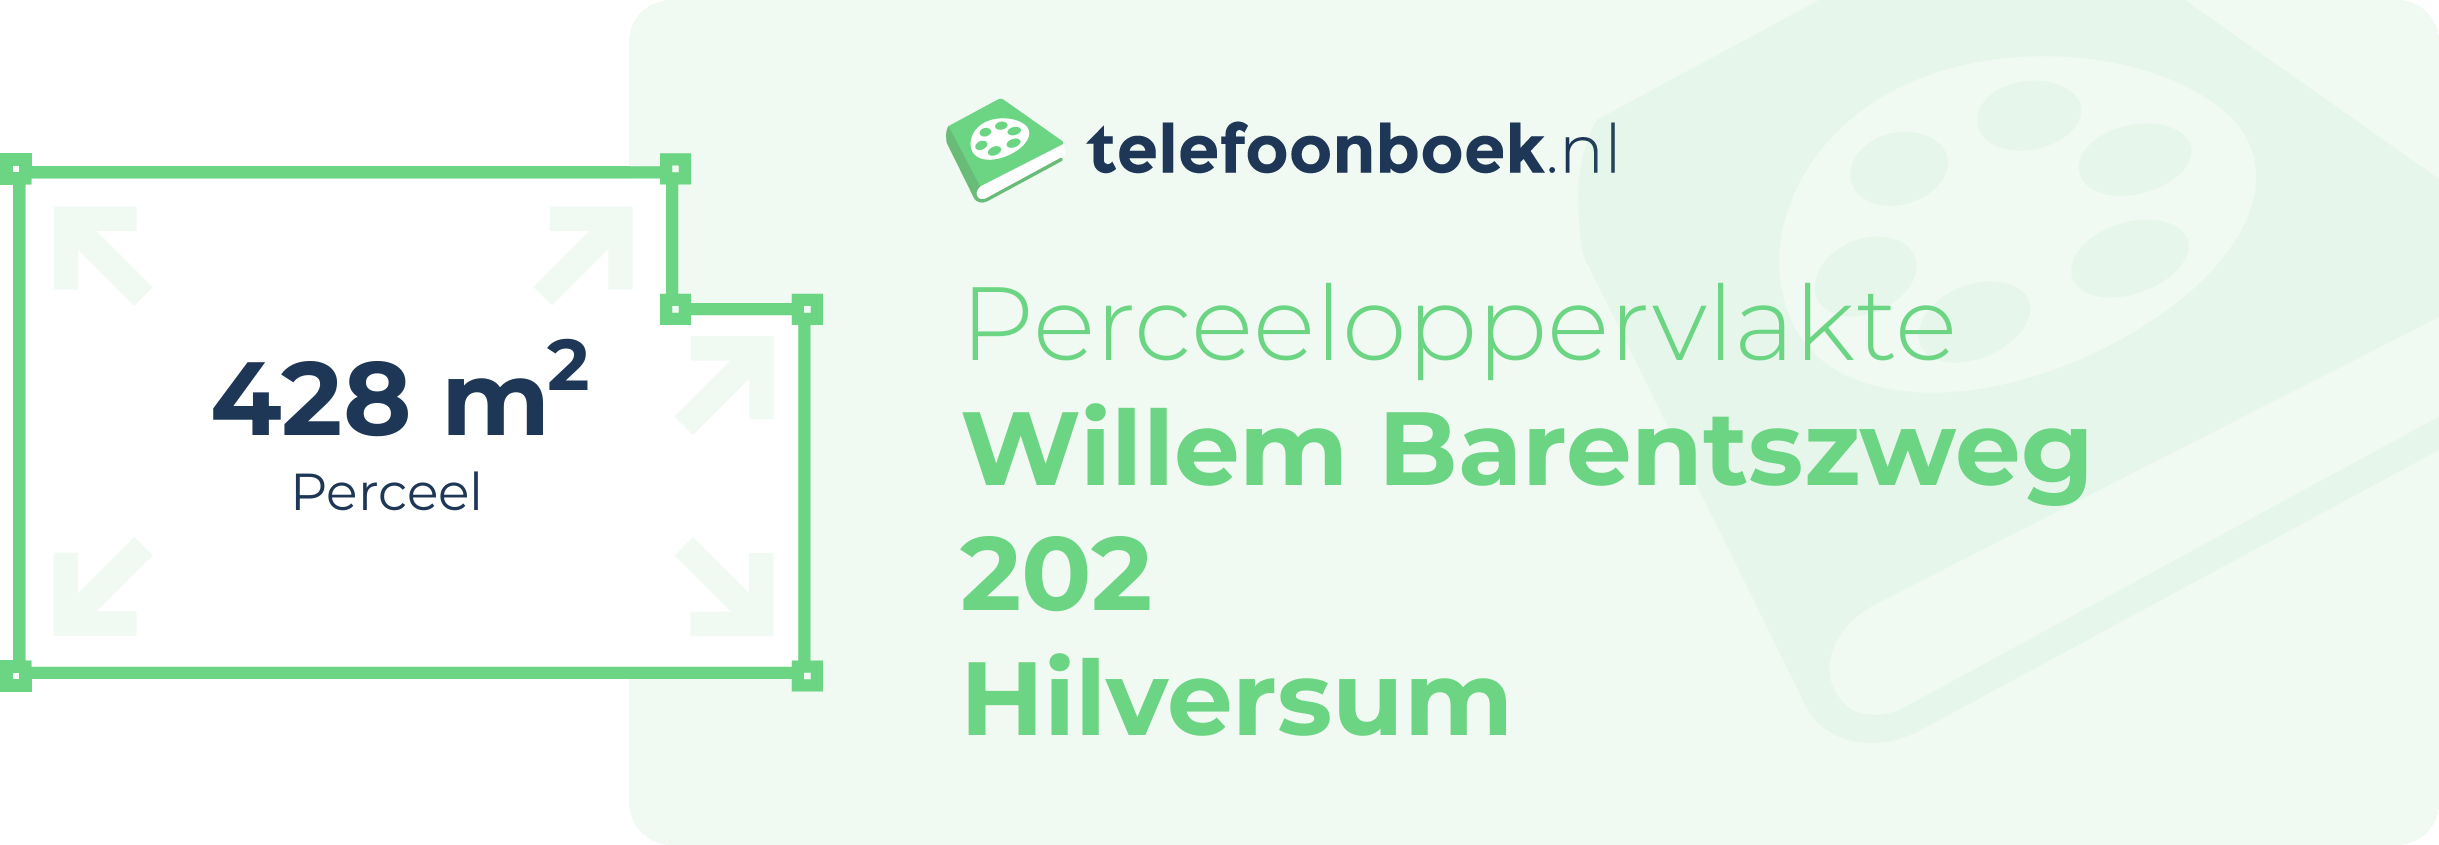 Perceeloppervlakte Willem Barentszweg 202 Hilversum